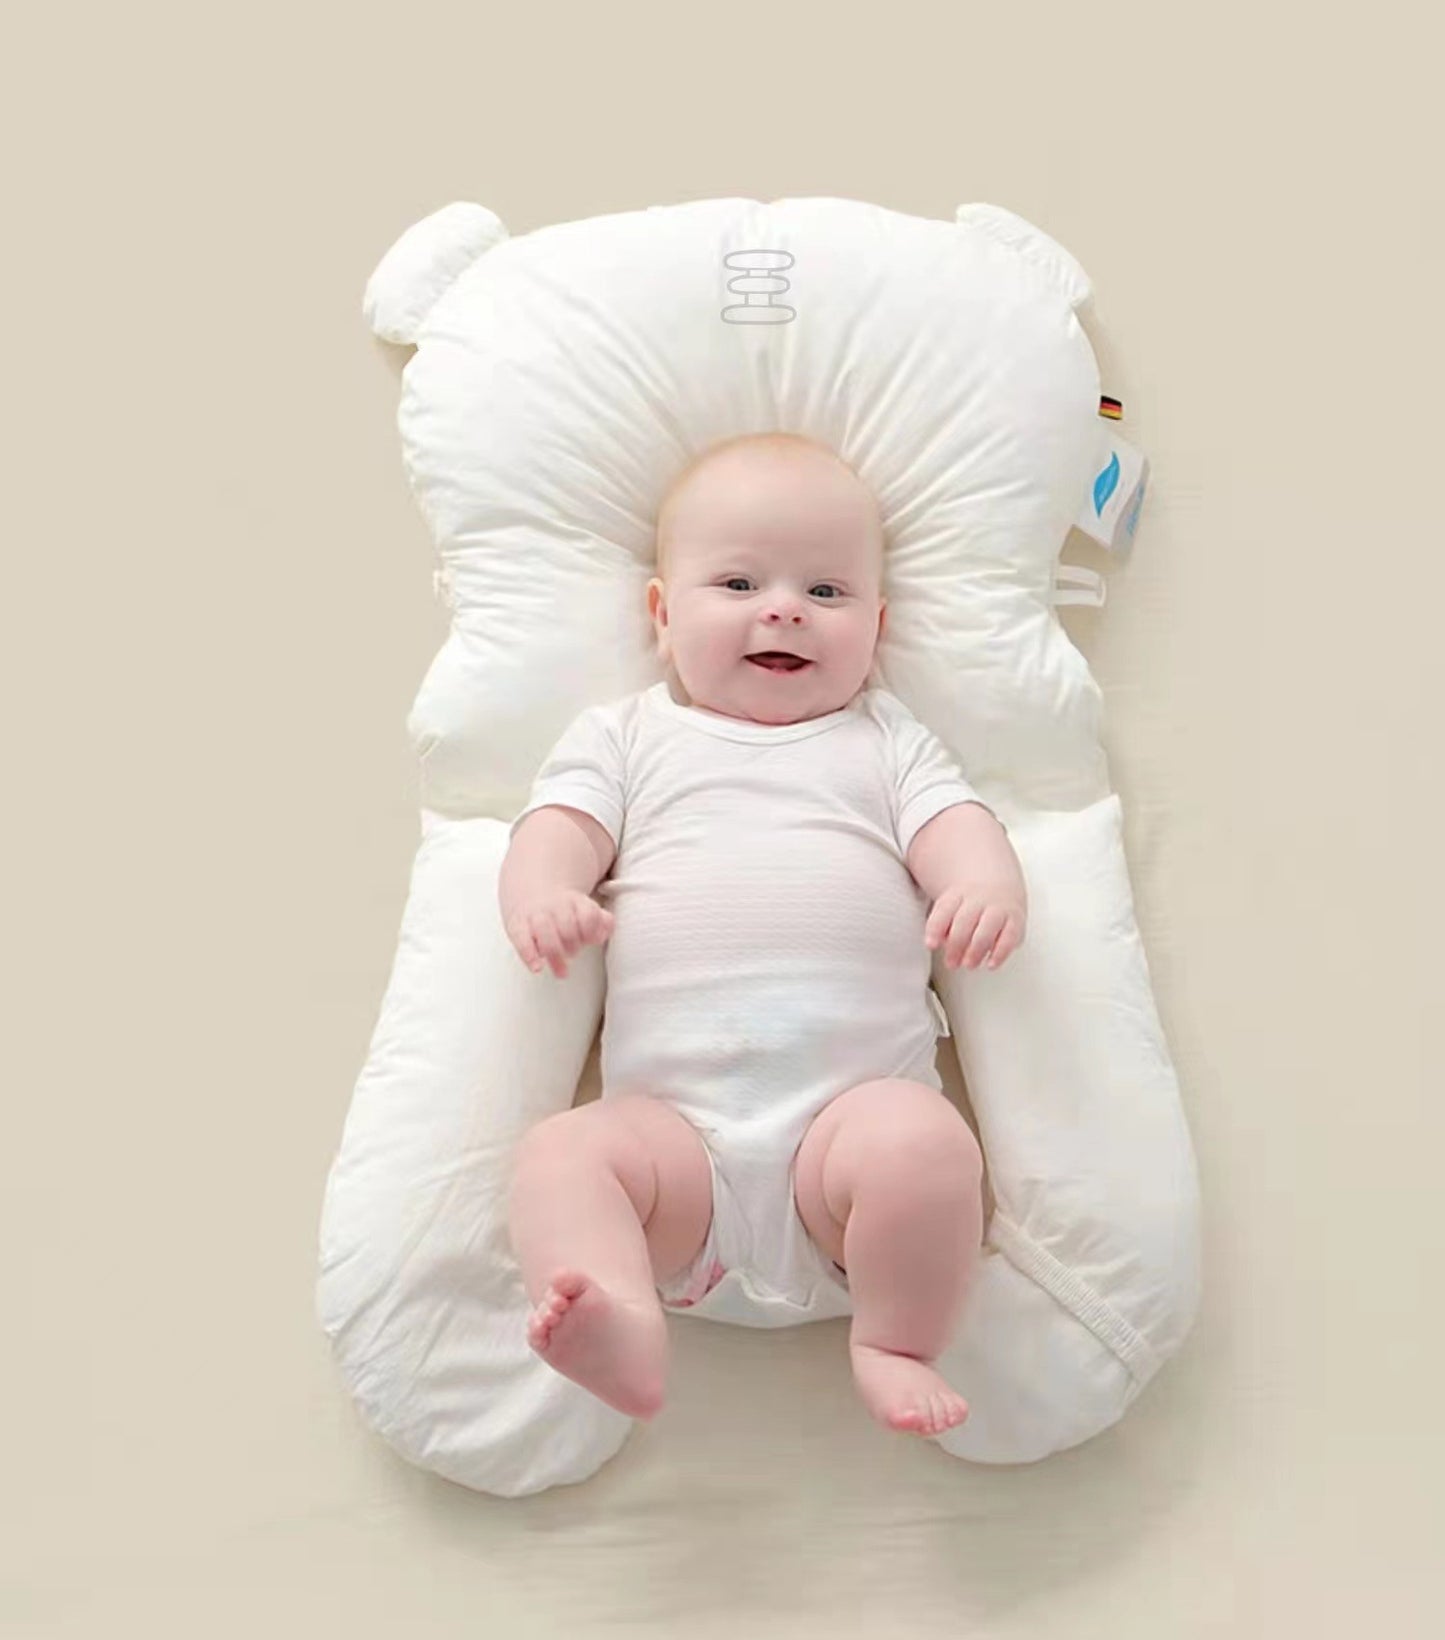 BabyTräume - Neugeborenen-Baby-Schlafkissen